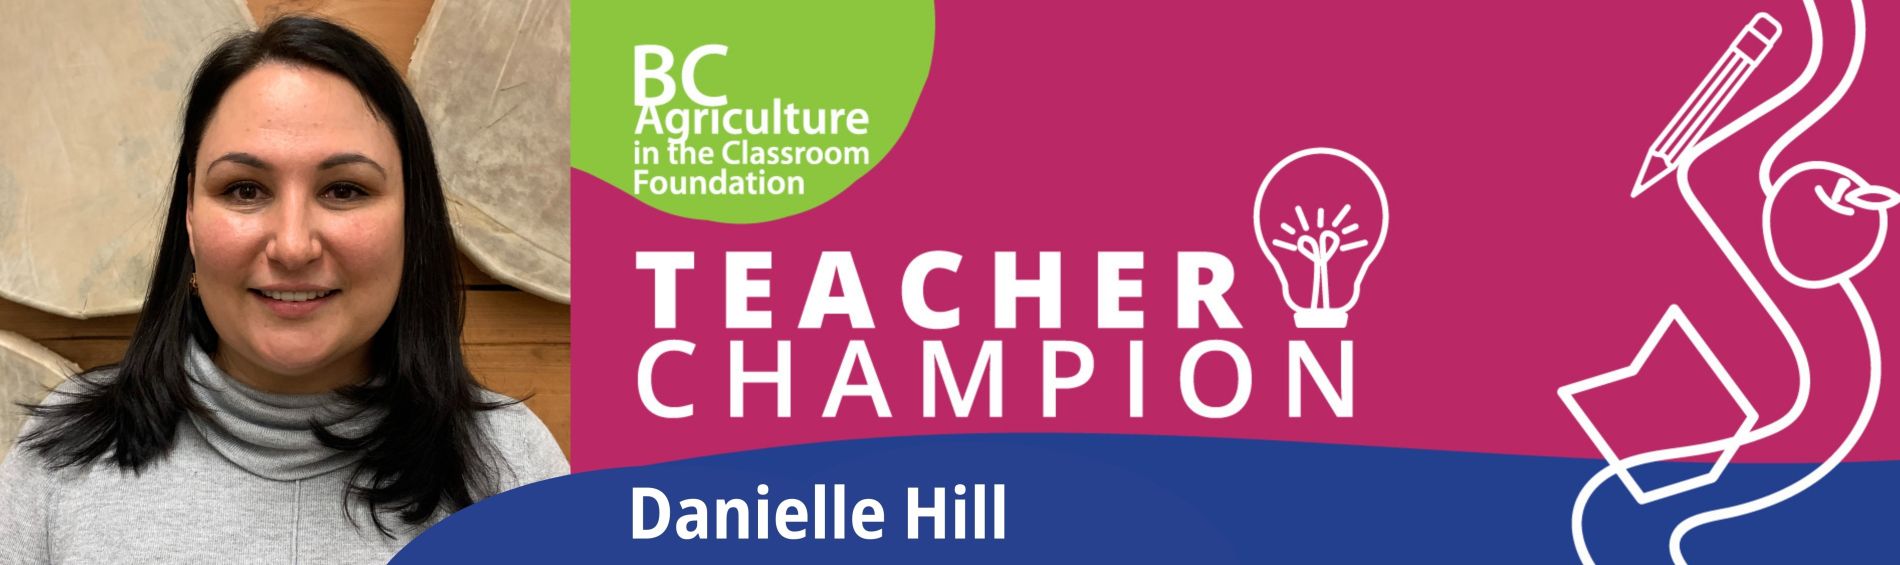 teacher-champion-danielle-hill